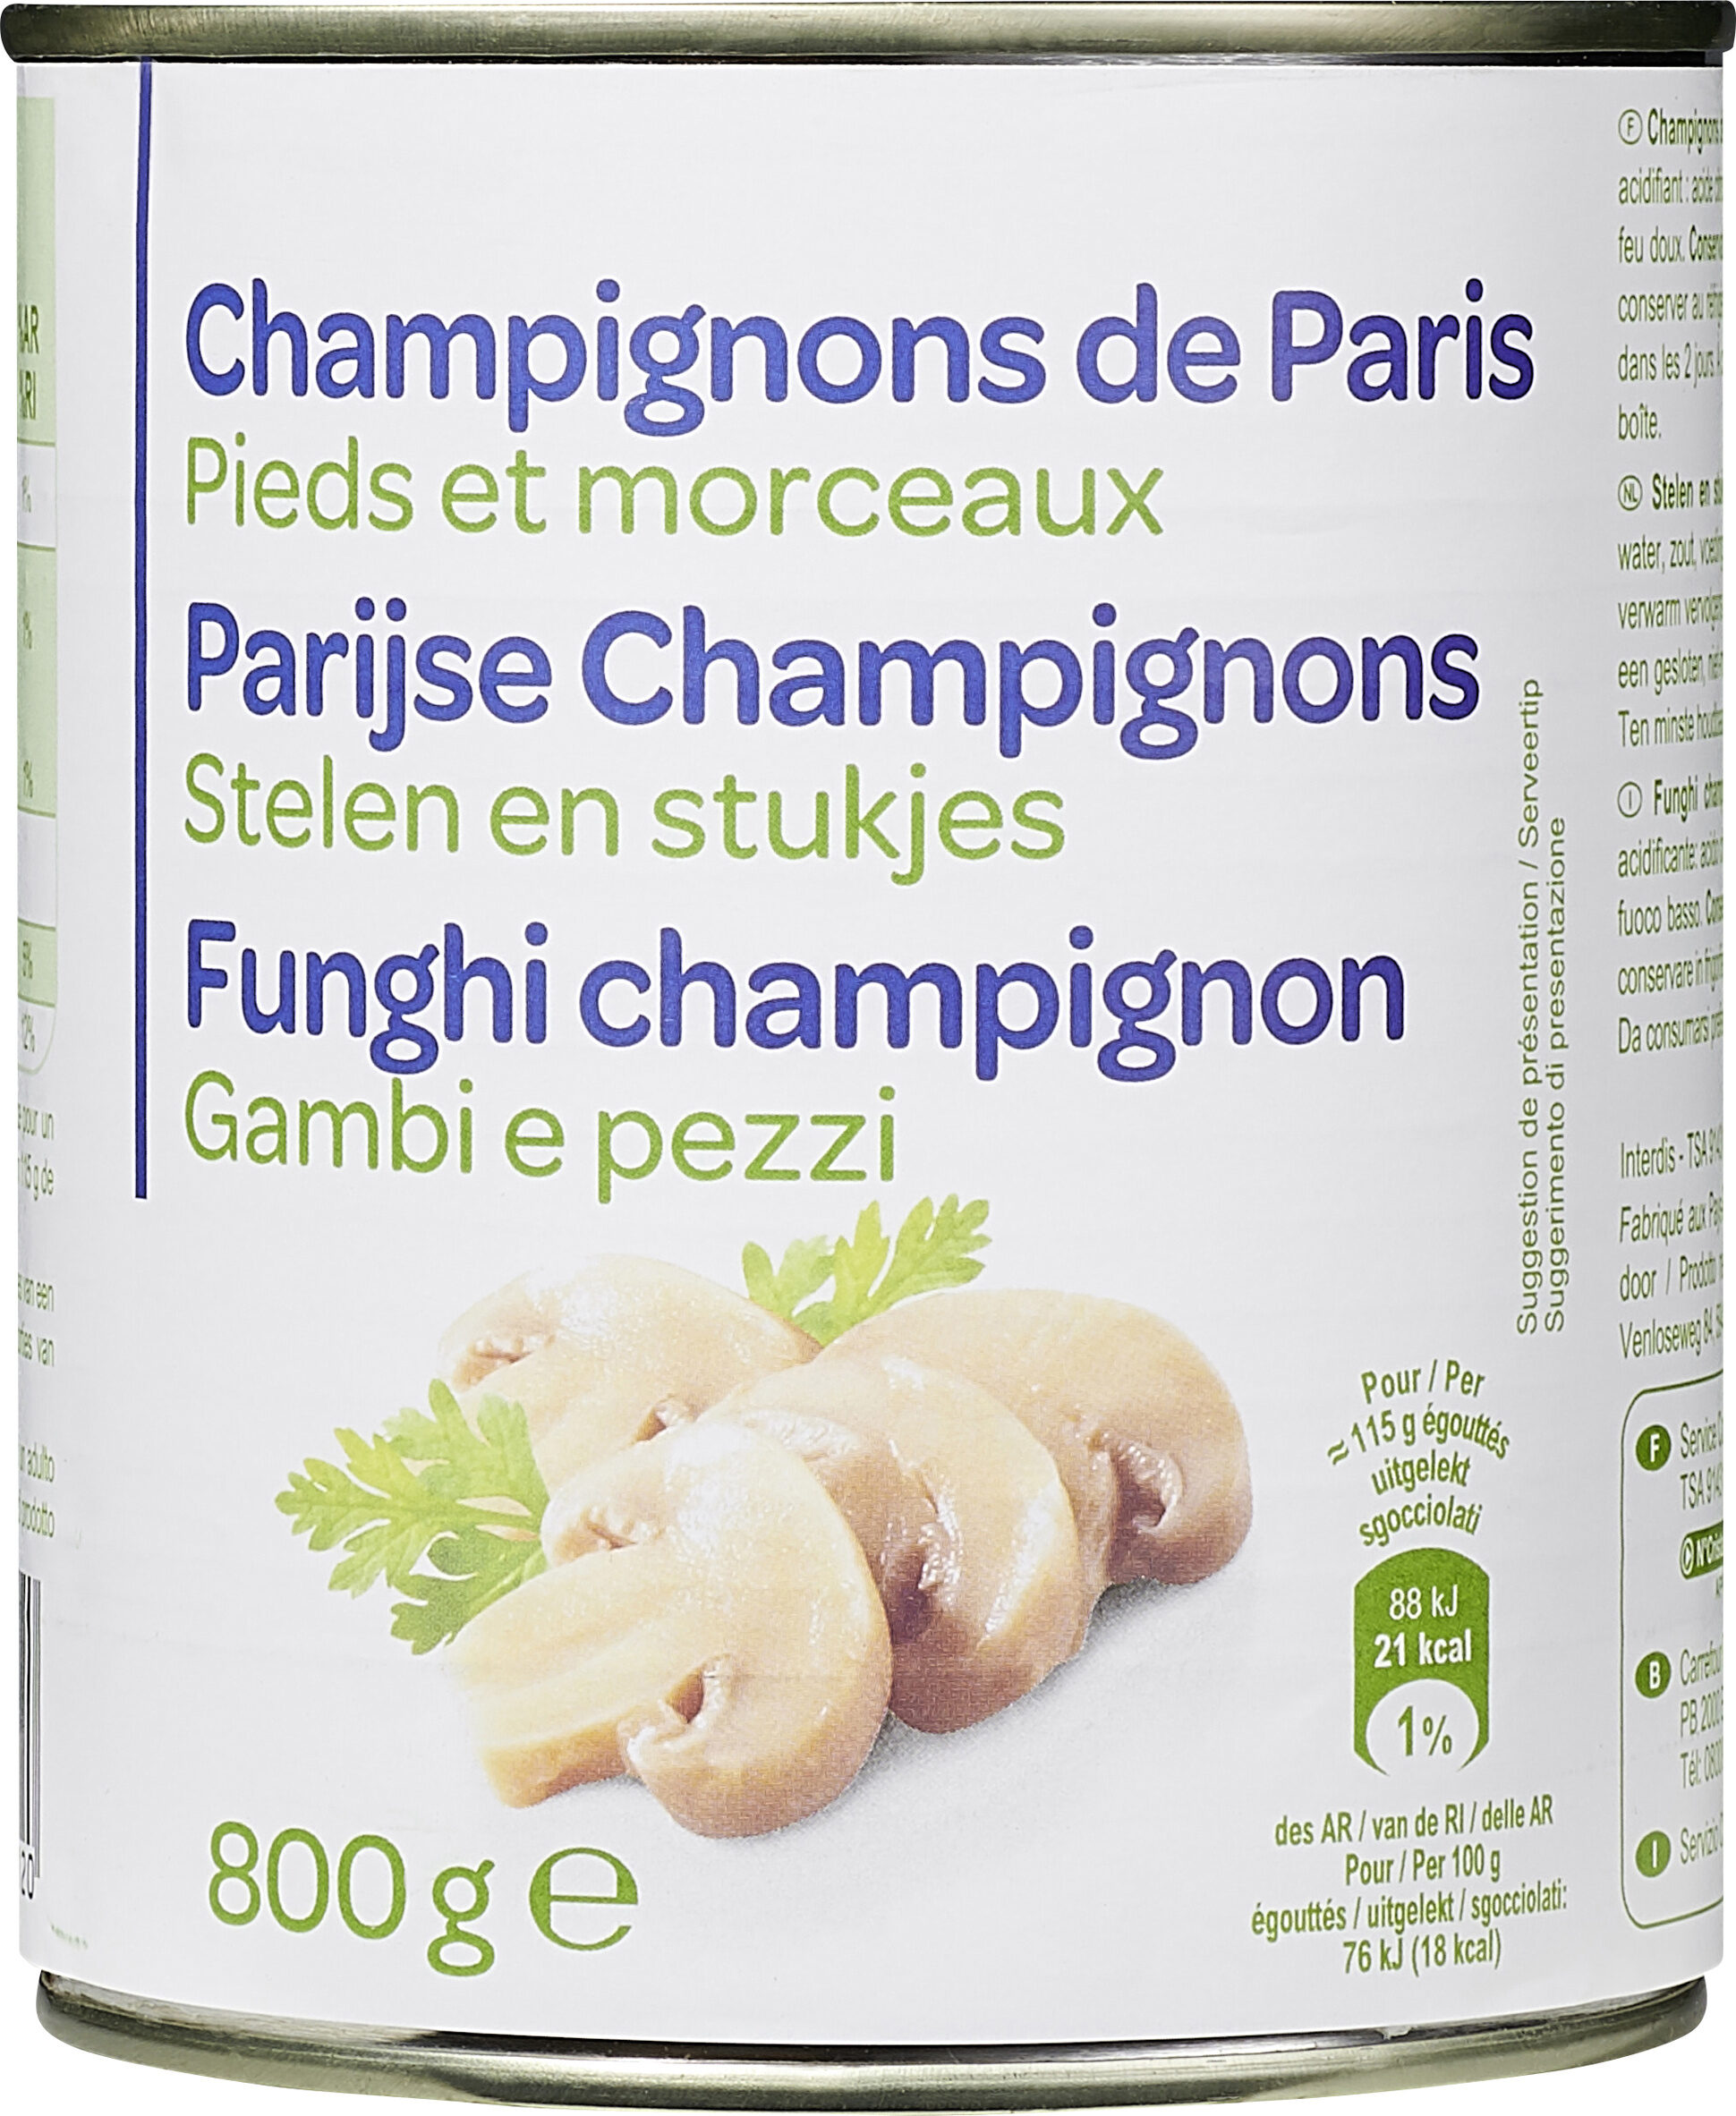 Champignons de Paris Pieds et morceaux - Producto - fr